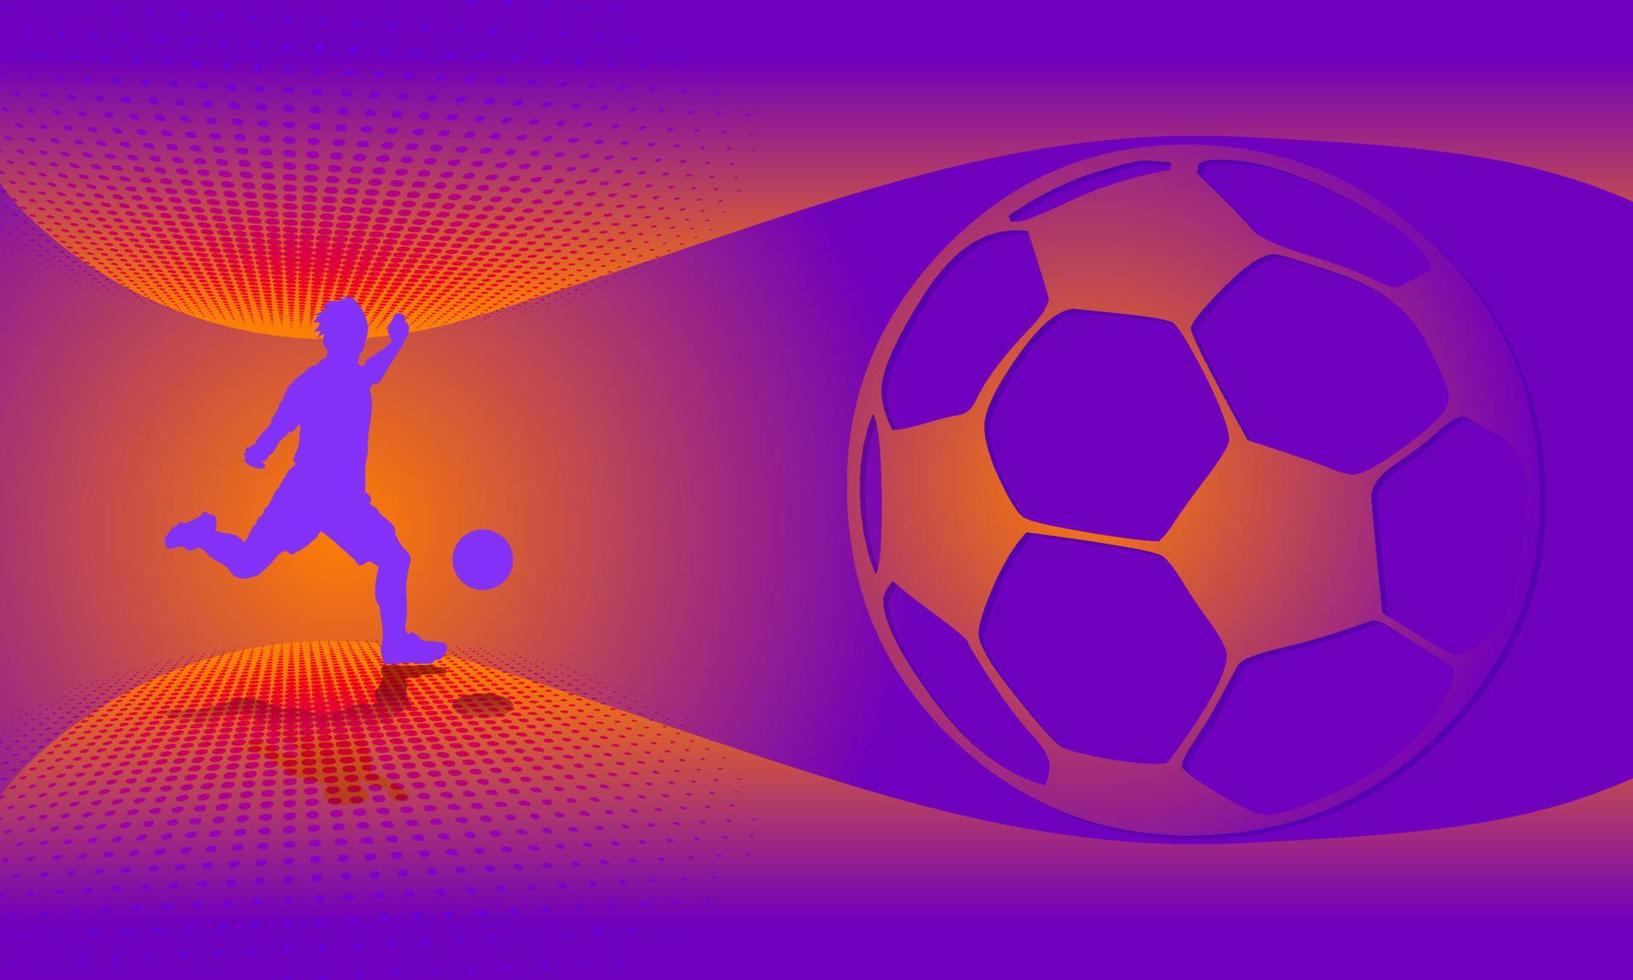 pallone da calcio su sfondo sfumato astratto illustrazione vettoriale